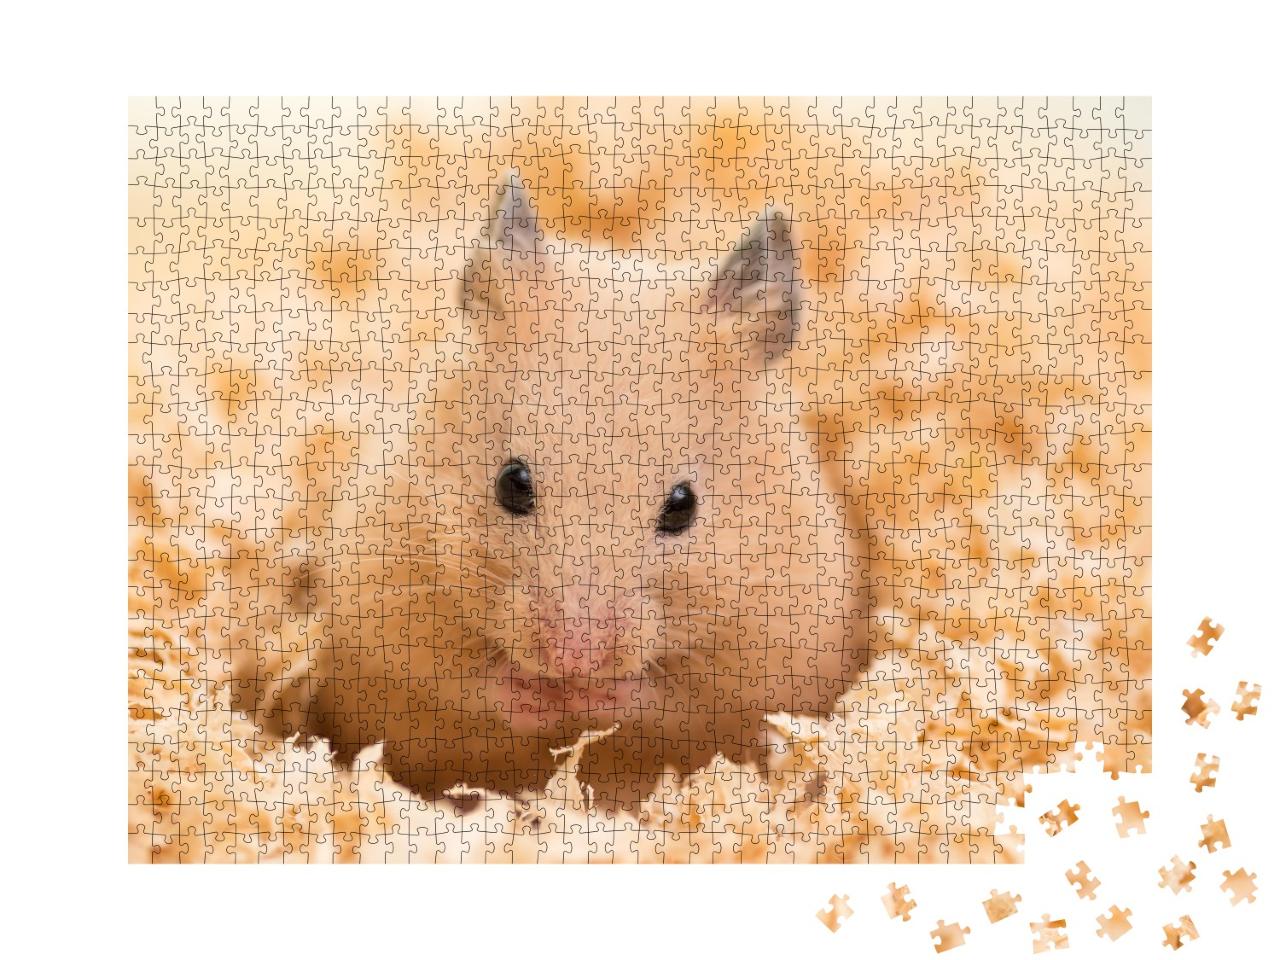 Puzzle de 1000 pièces « Hamster doré sur copeaux de bois »